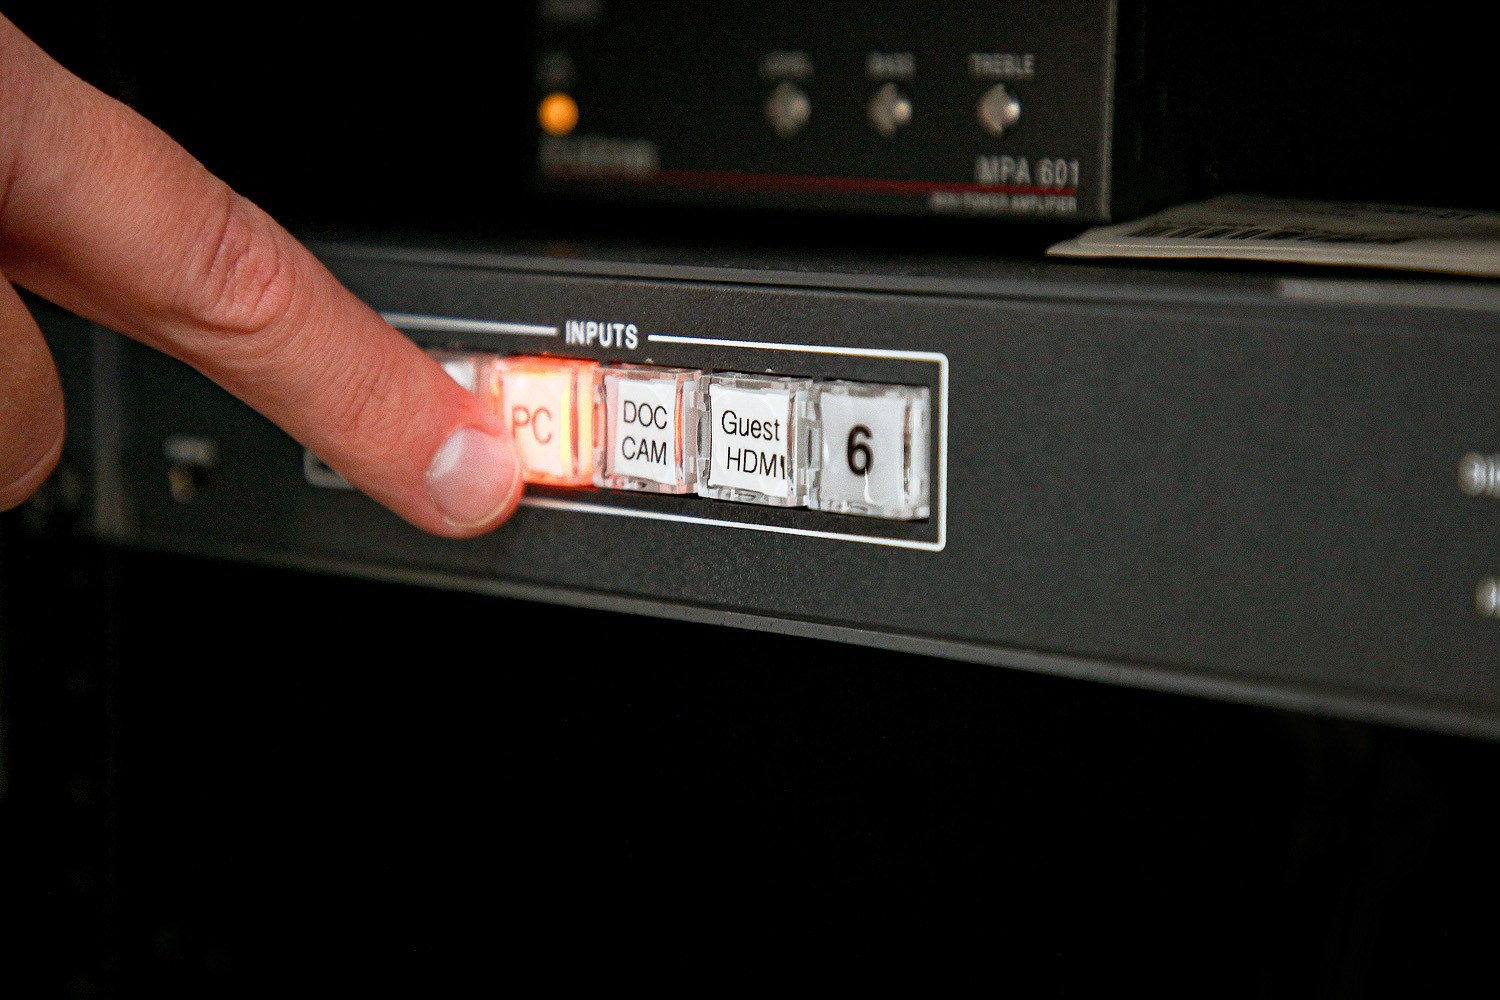 Le sélecteur dispose de boutons clairement identifiés, facilitant la sélection d'une source audiovisuelle